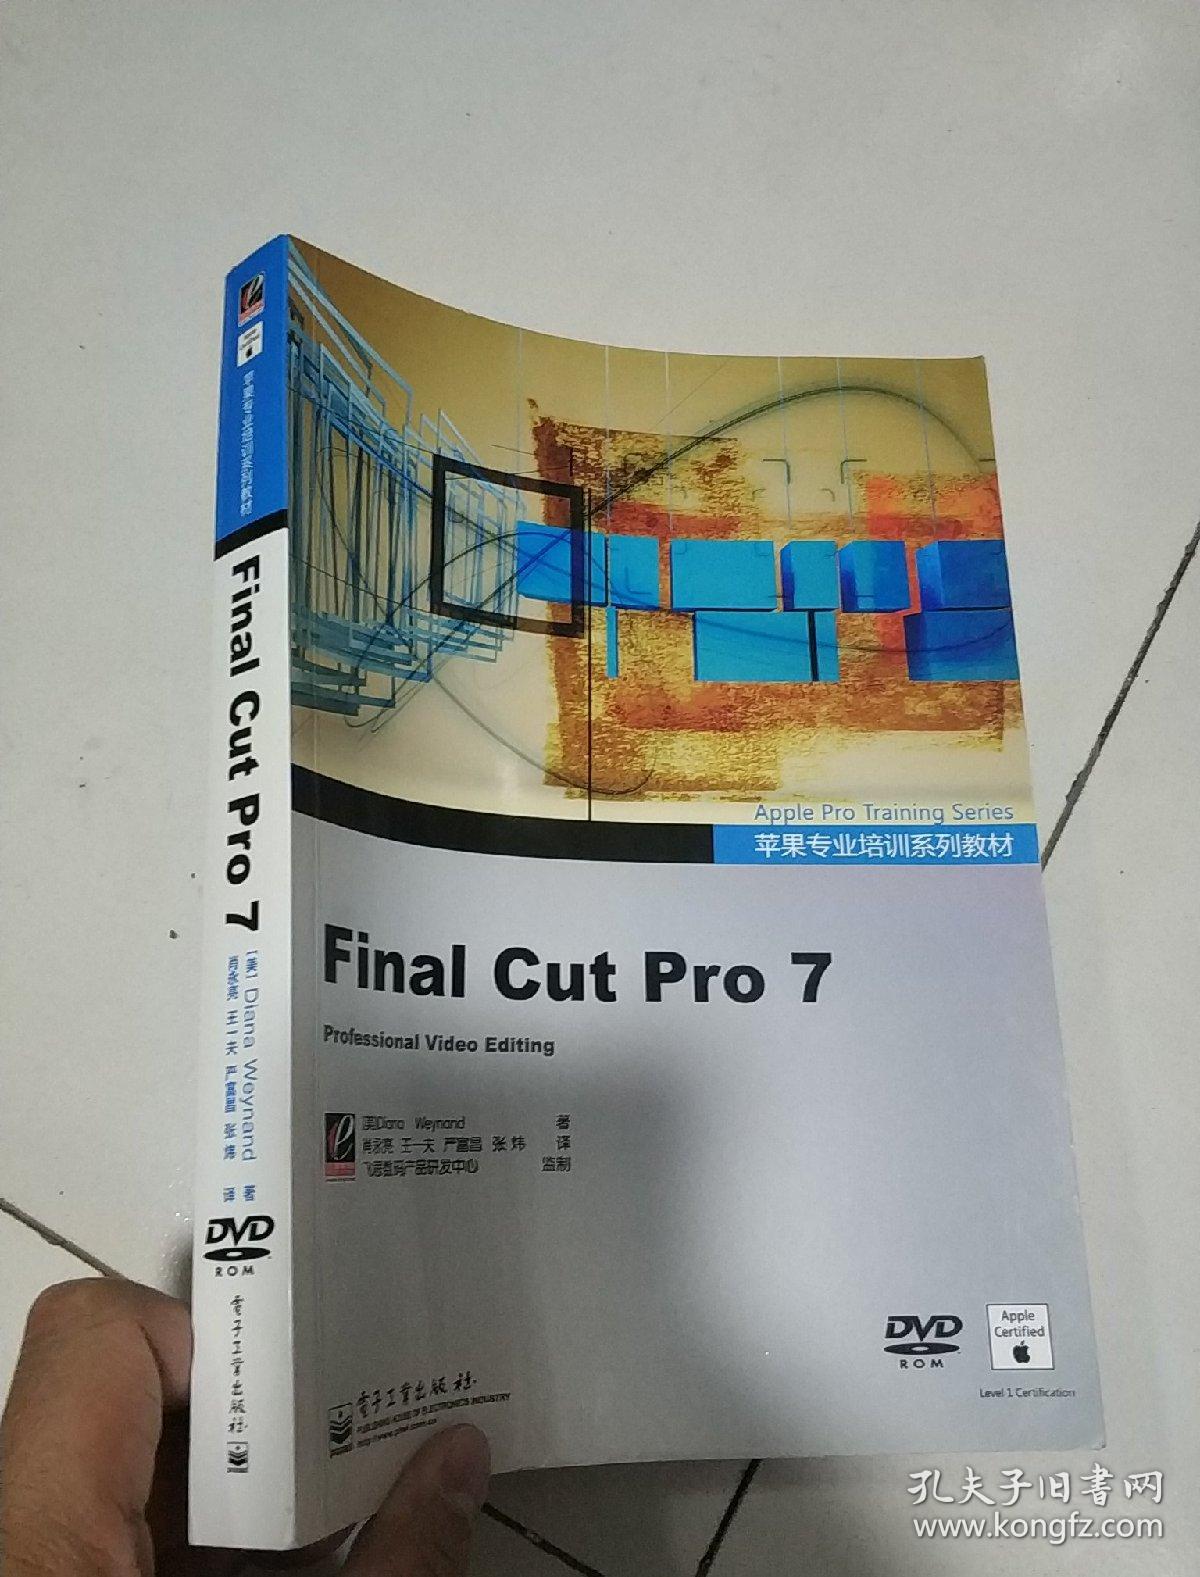 苹果专业培训系列教材:Final Cut Pro 7(全彩)